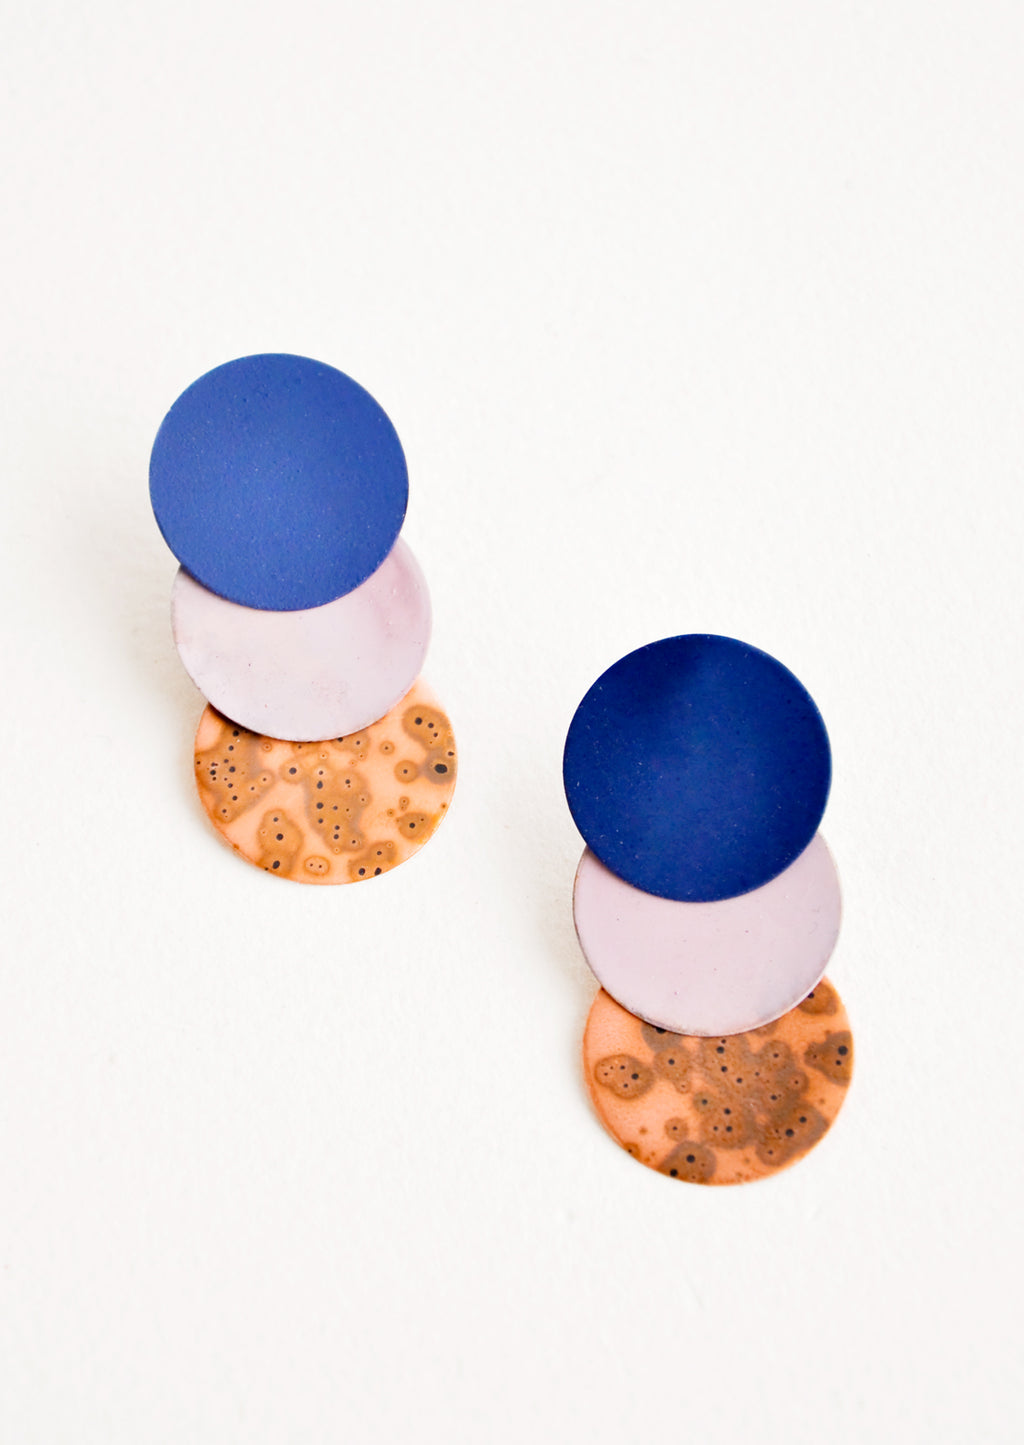 Rose / Navy / Copper: Twiggy Earrings in Rose / Navy / Copper - LEIF